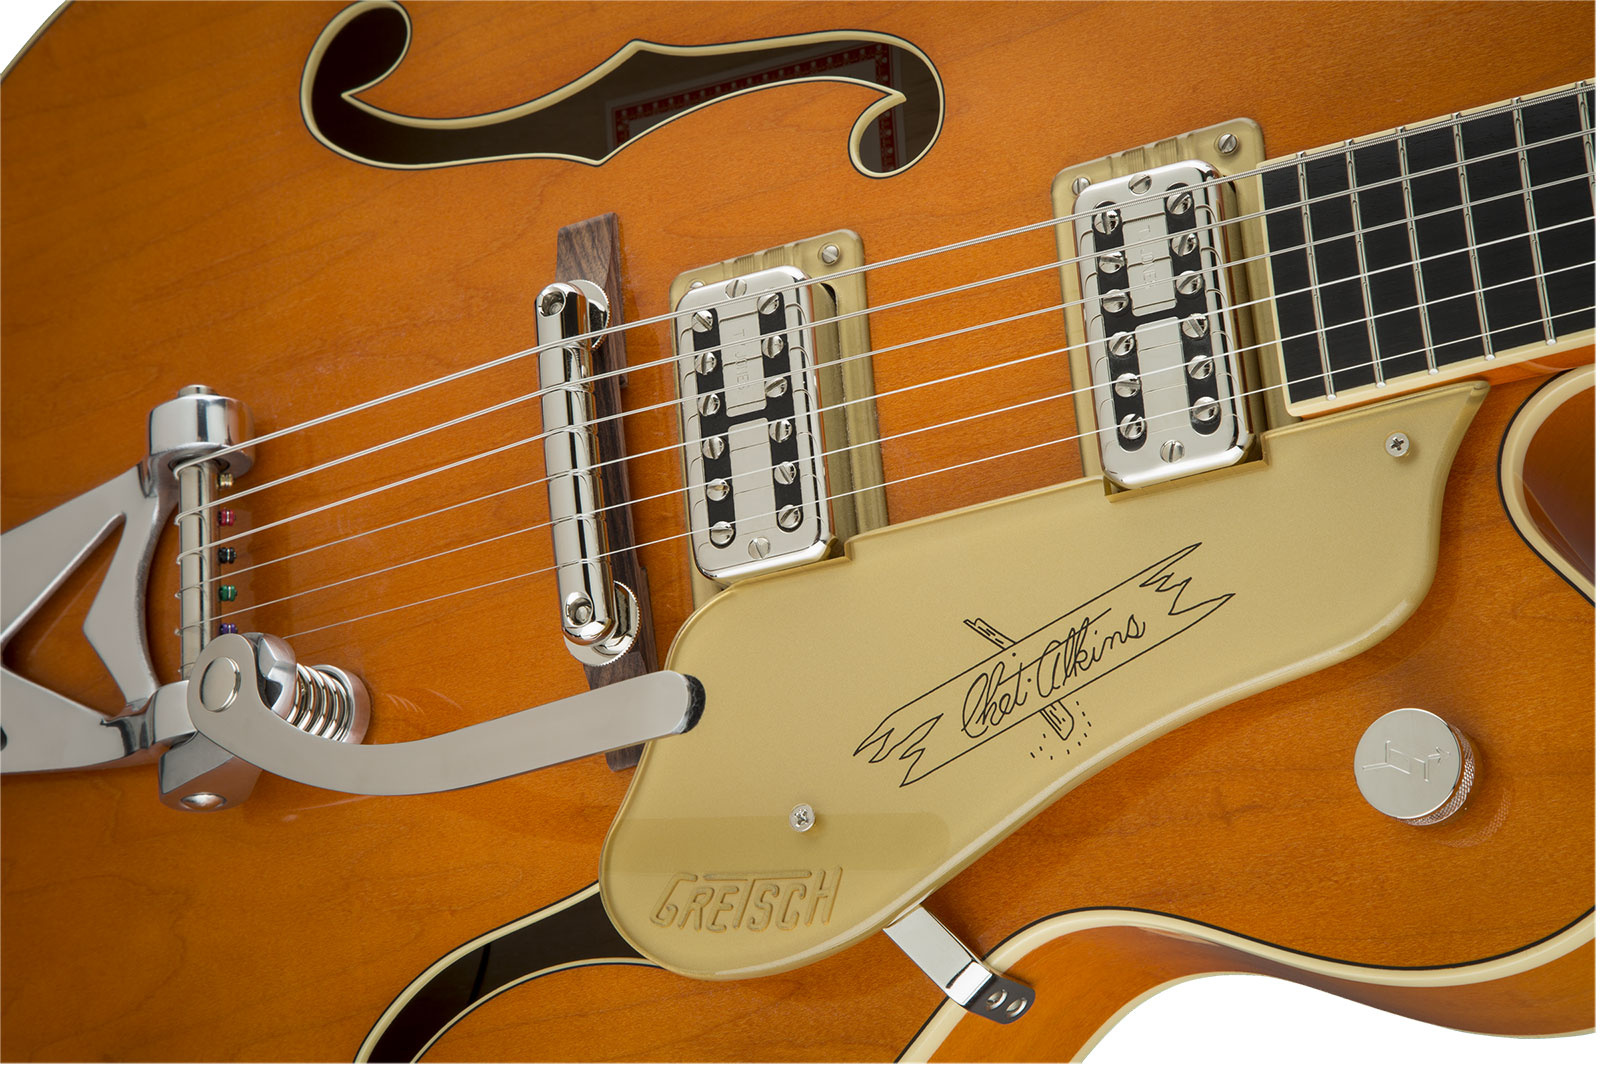 Gretsch Chet Atkins G6120t-59 Vintage Select 1959 Bigsby Pro Jap 2h Tv Jones Trem Eb - Vintage Orange Stain - Hollow bodytock elektrische gitaar - Var